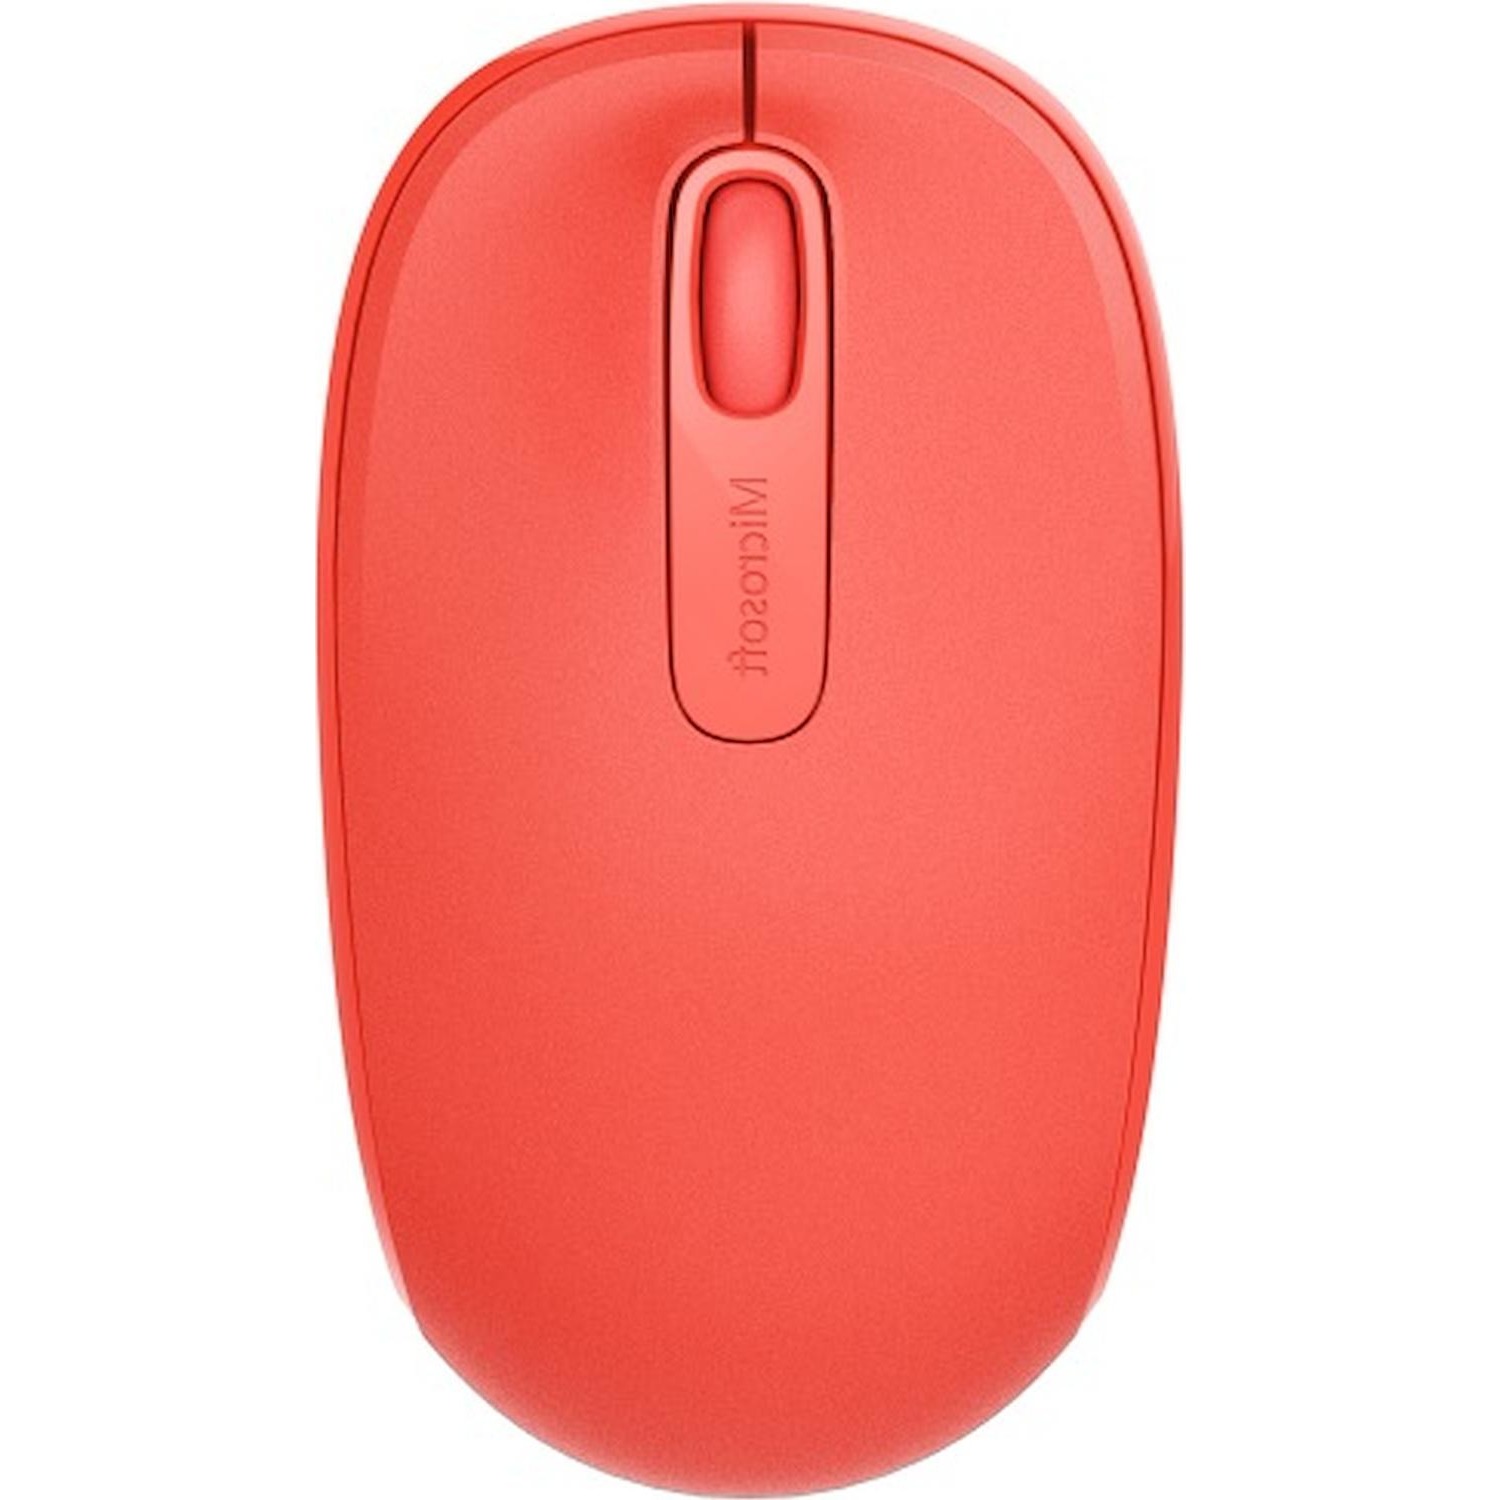 Immagine per Mouse Microsoft ottico wireless 1850 rosso da DIMOStore